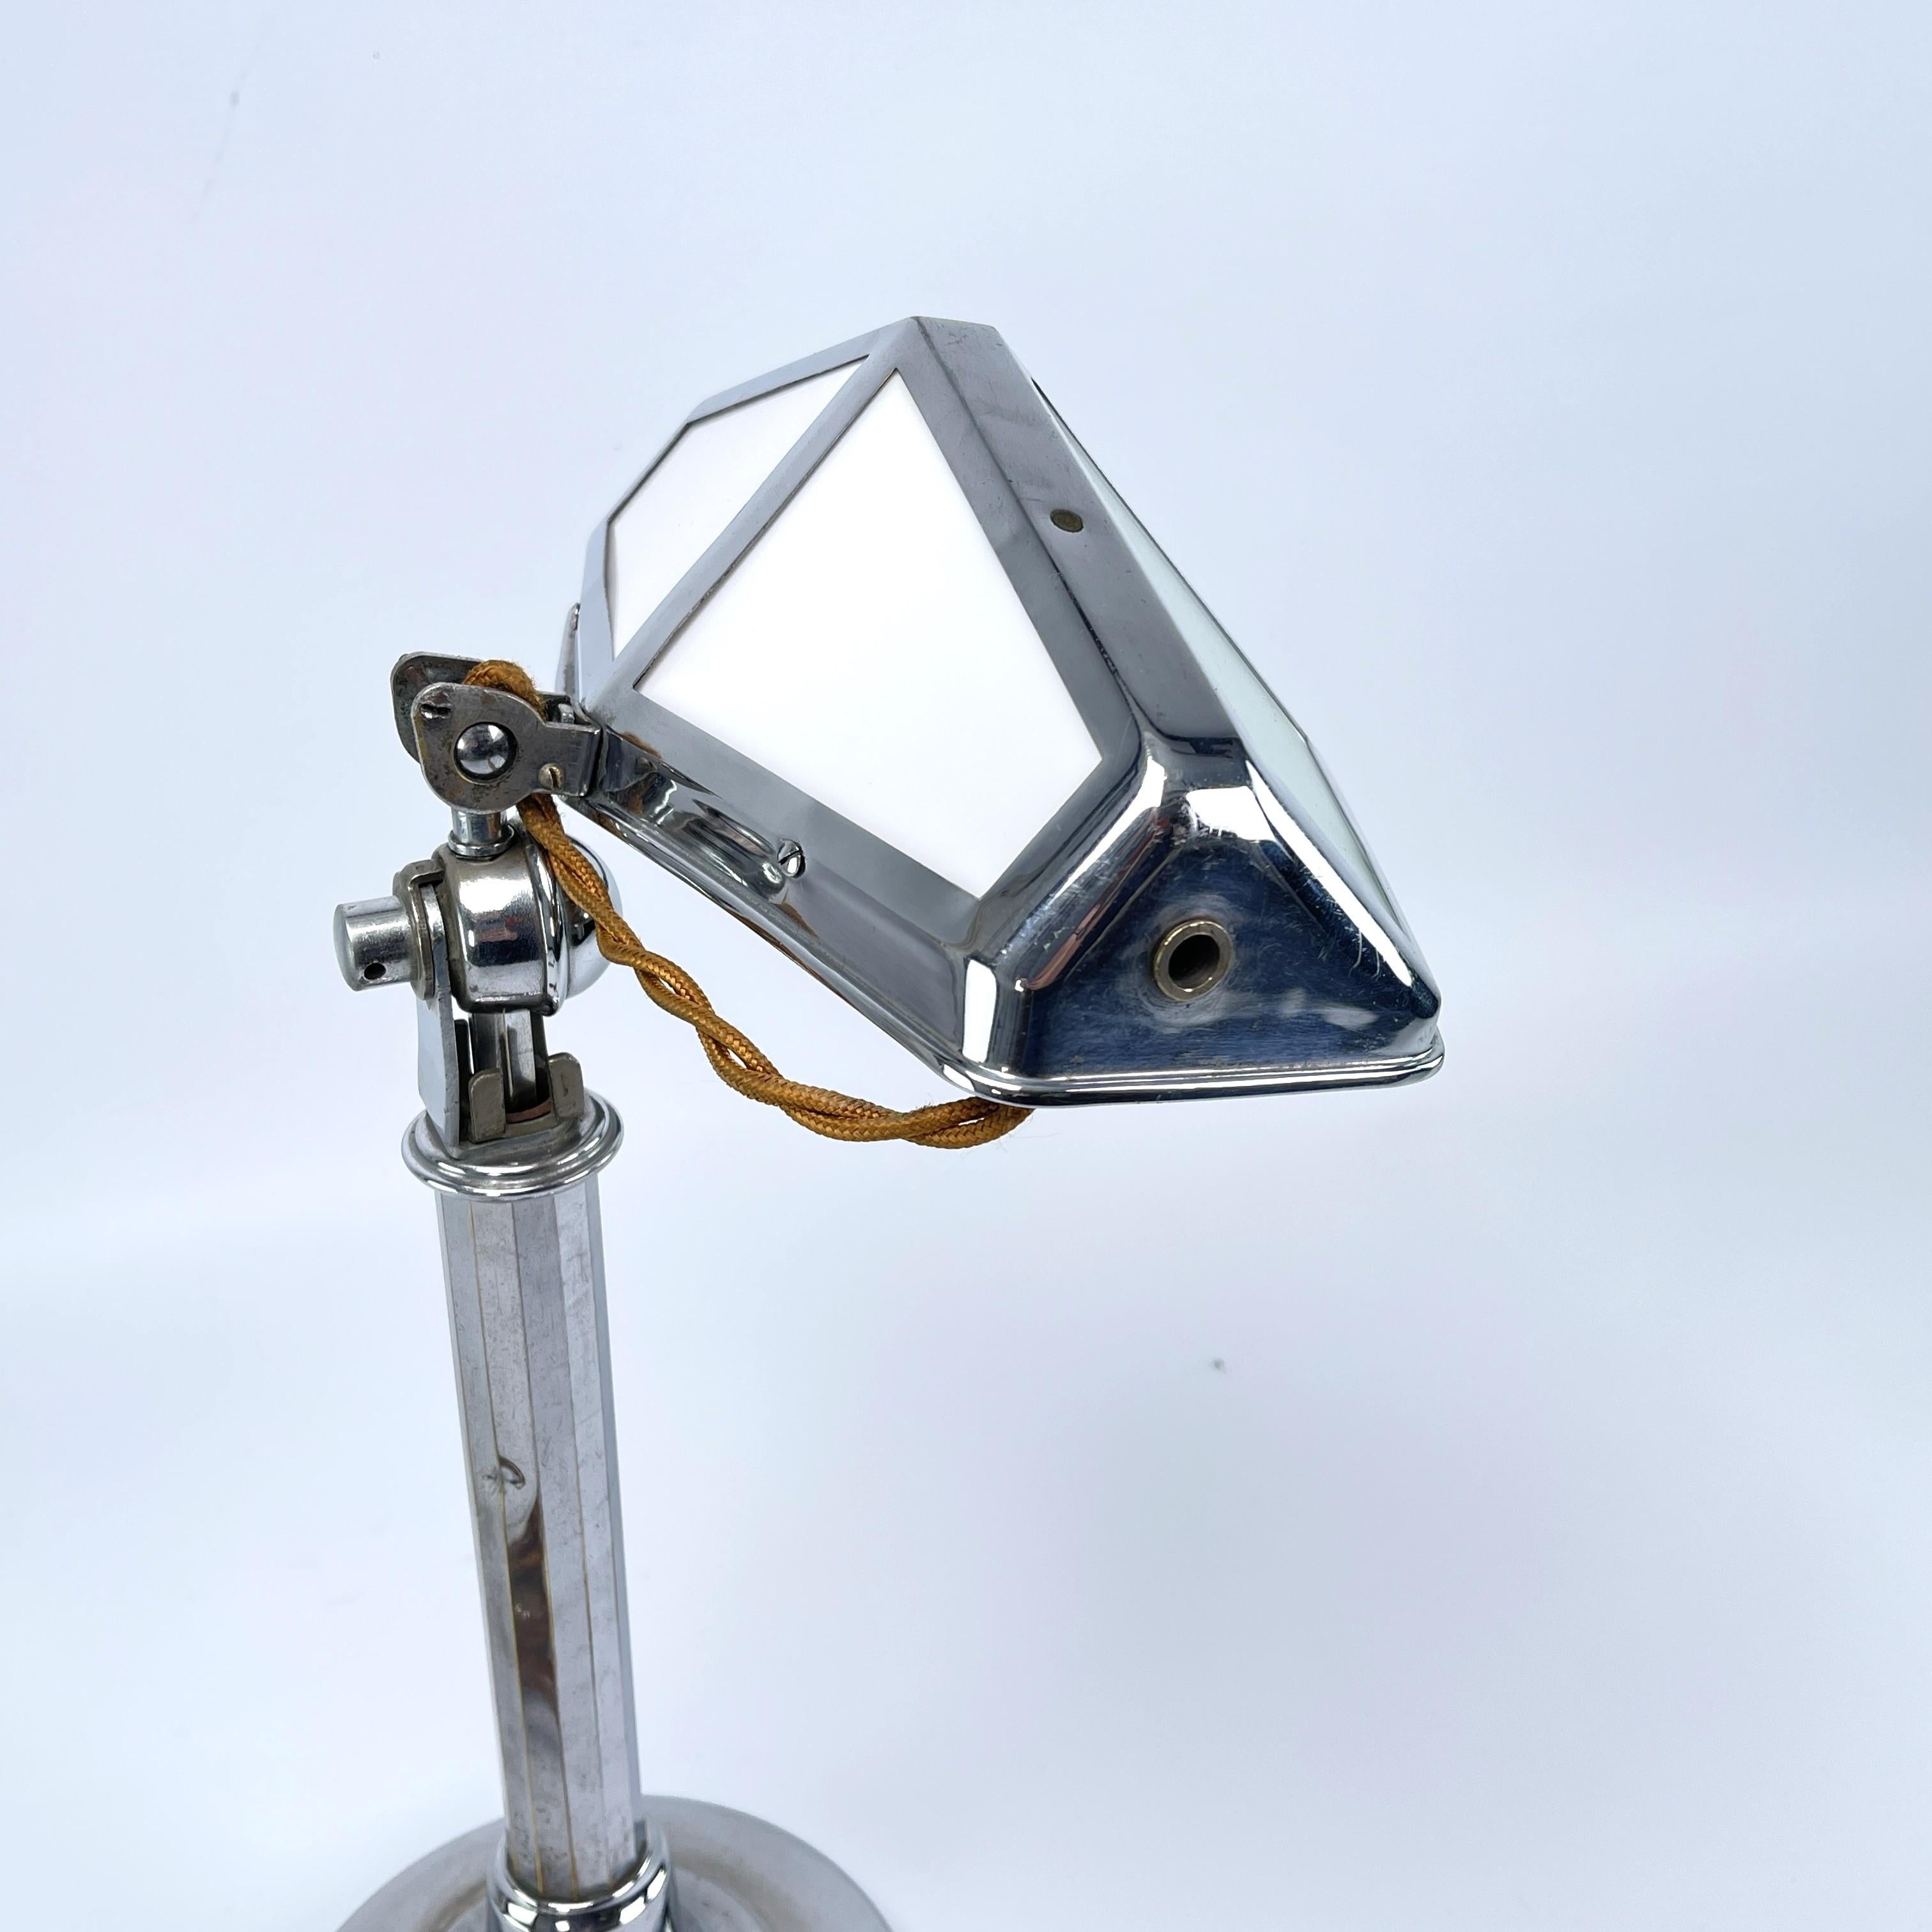 Große ART DECO-Tischlampe von PIROUETT, Modell Nizza, 1930er Jahre

Die modernistische Pirouett-Leuchte entspricht eindeutig den Prinzipien des Bauhaus-Funktionalismus. Er kann um fast 360 Grad geschwenkt werden. Dadurch lässt sich der Reflektor